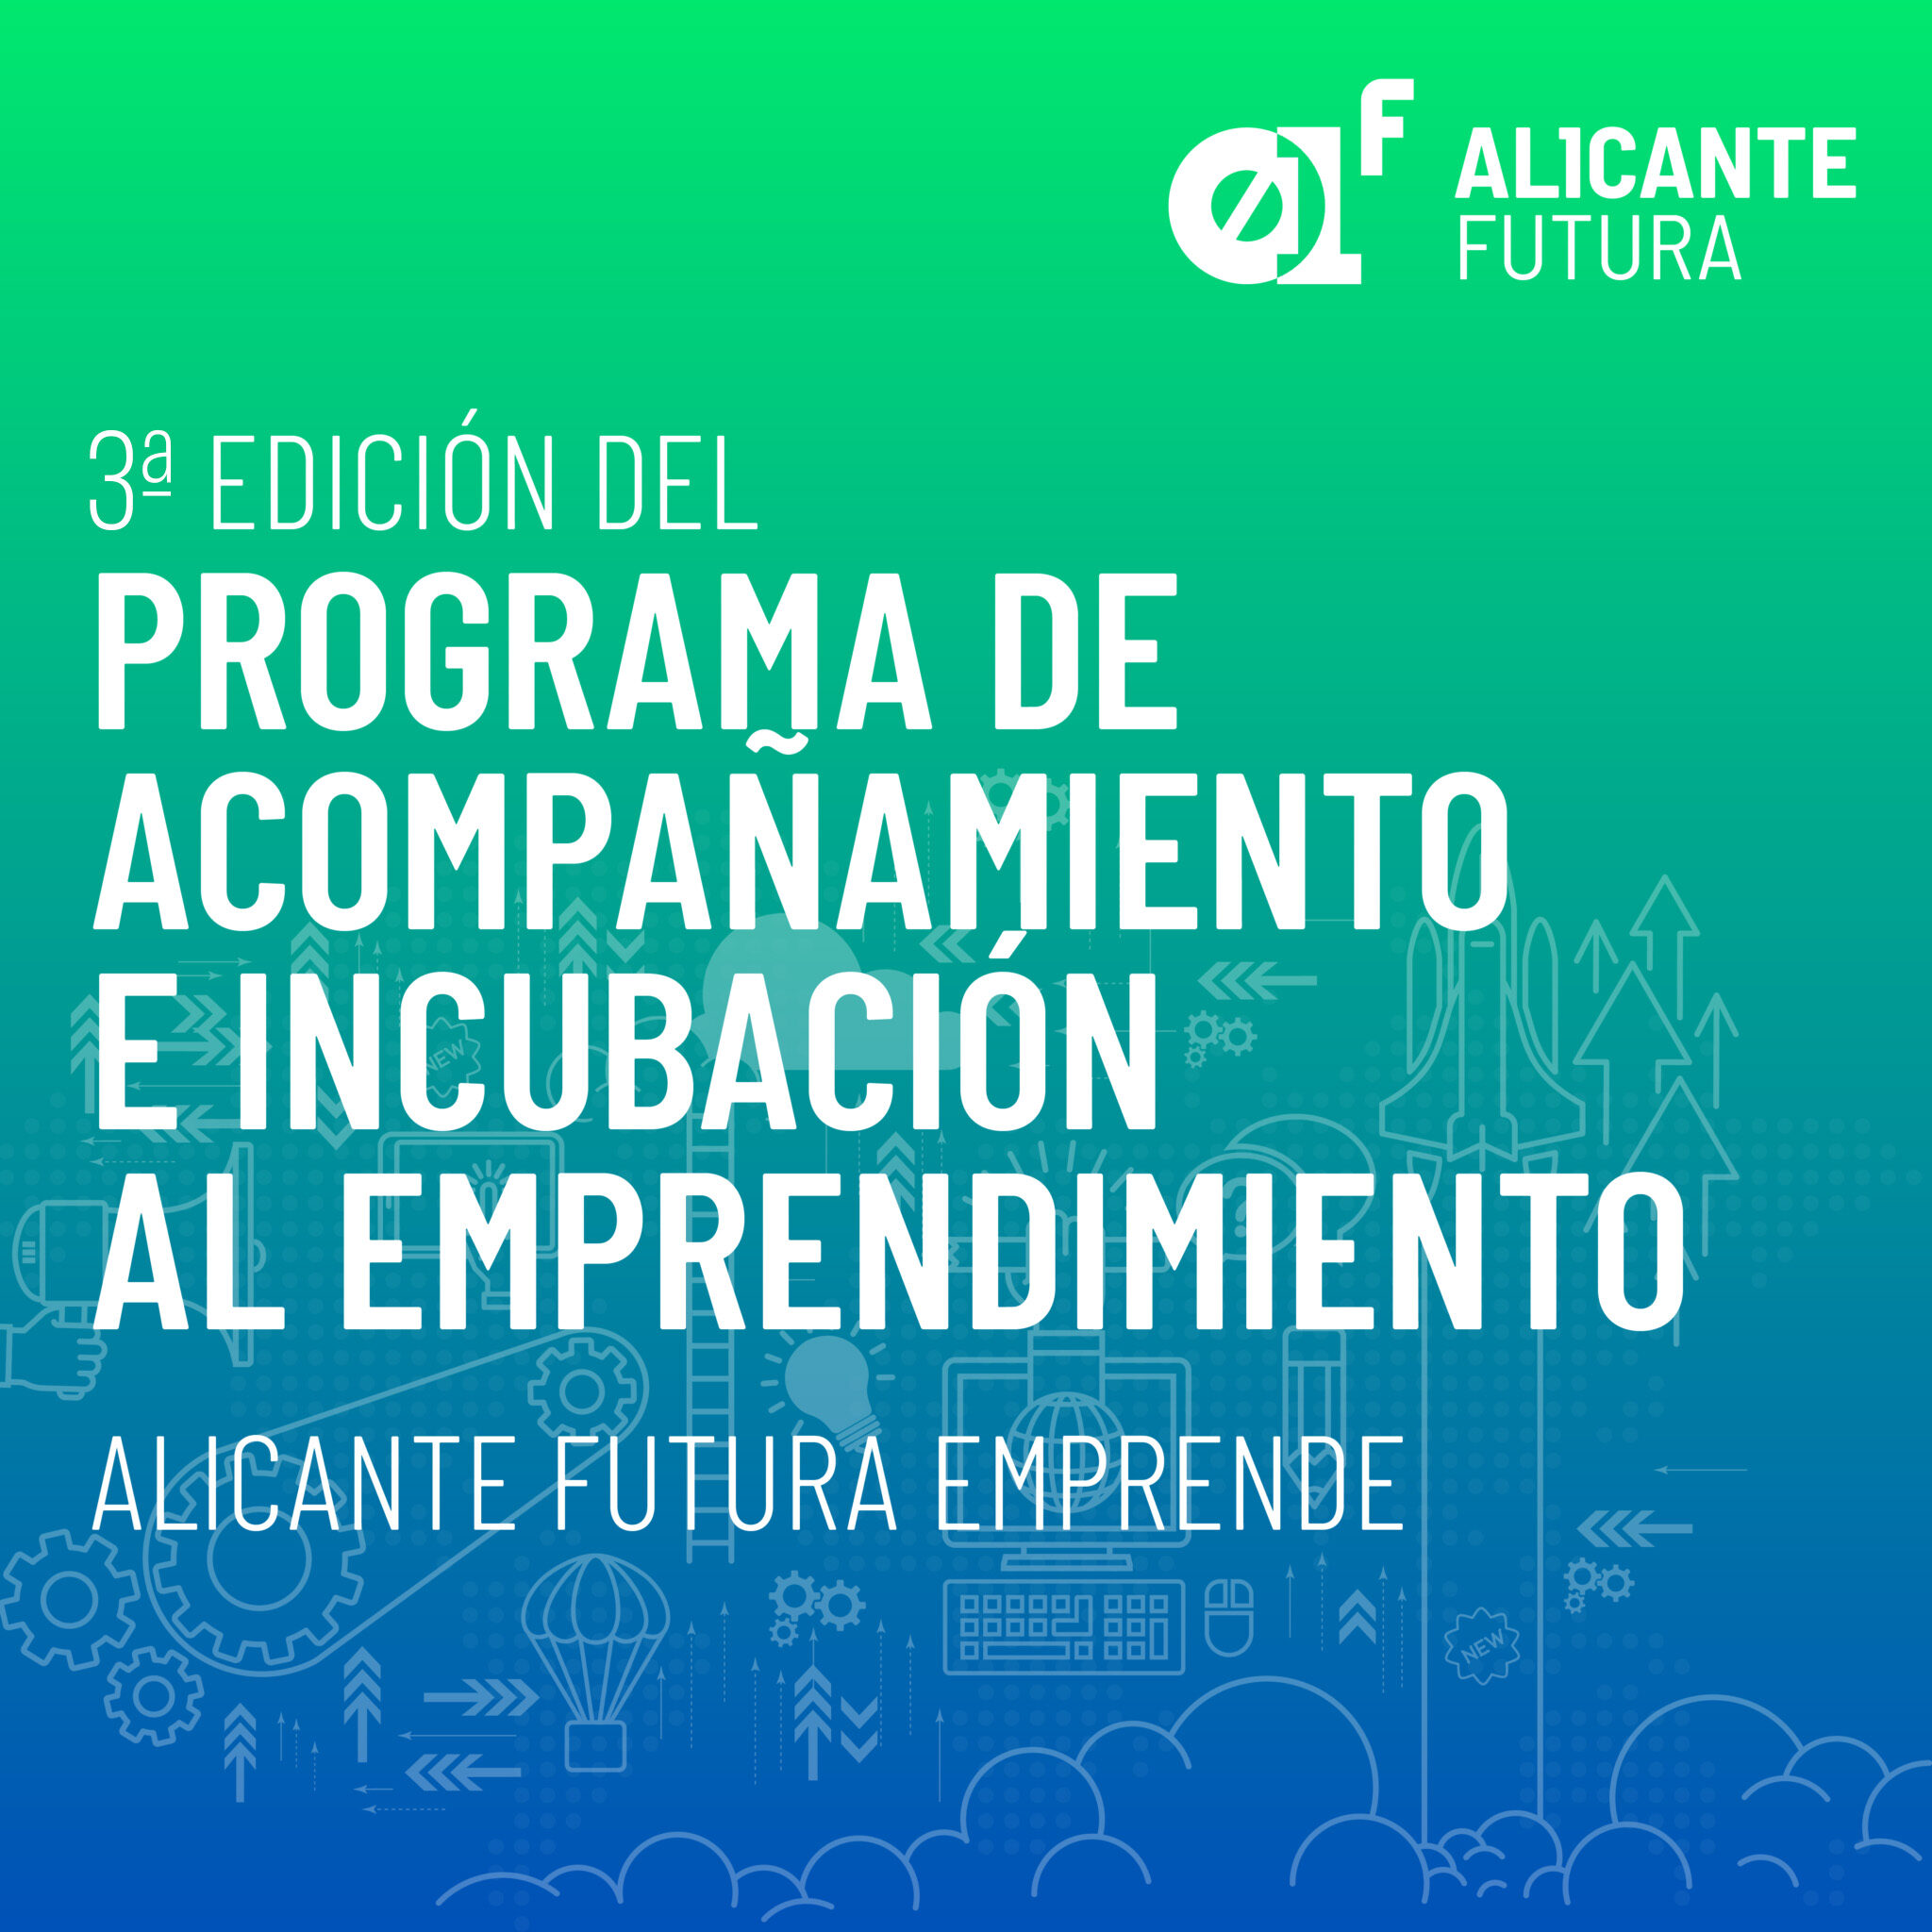 Arranca la 3ª Edición del Programa de Acompañamiento e Incubación del Emprendimiento de Alicante Futura